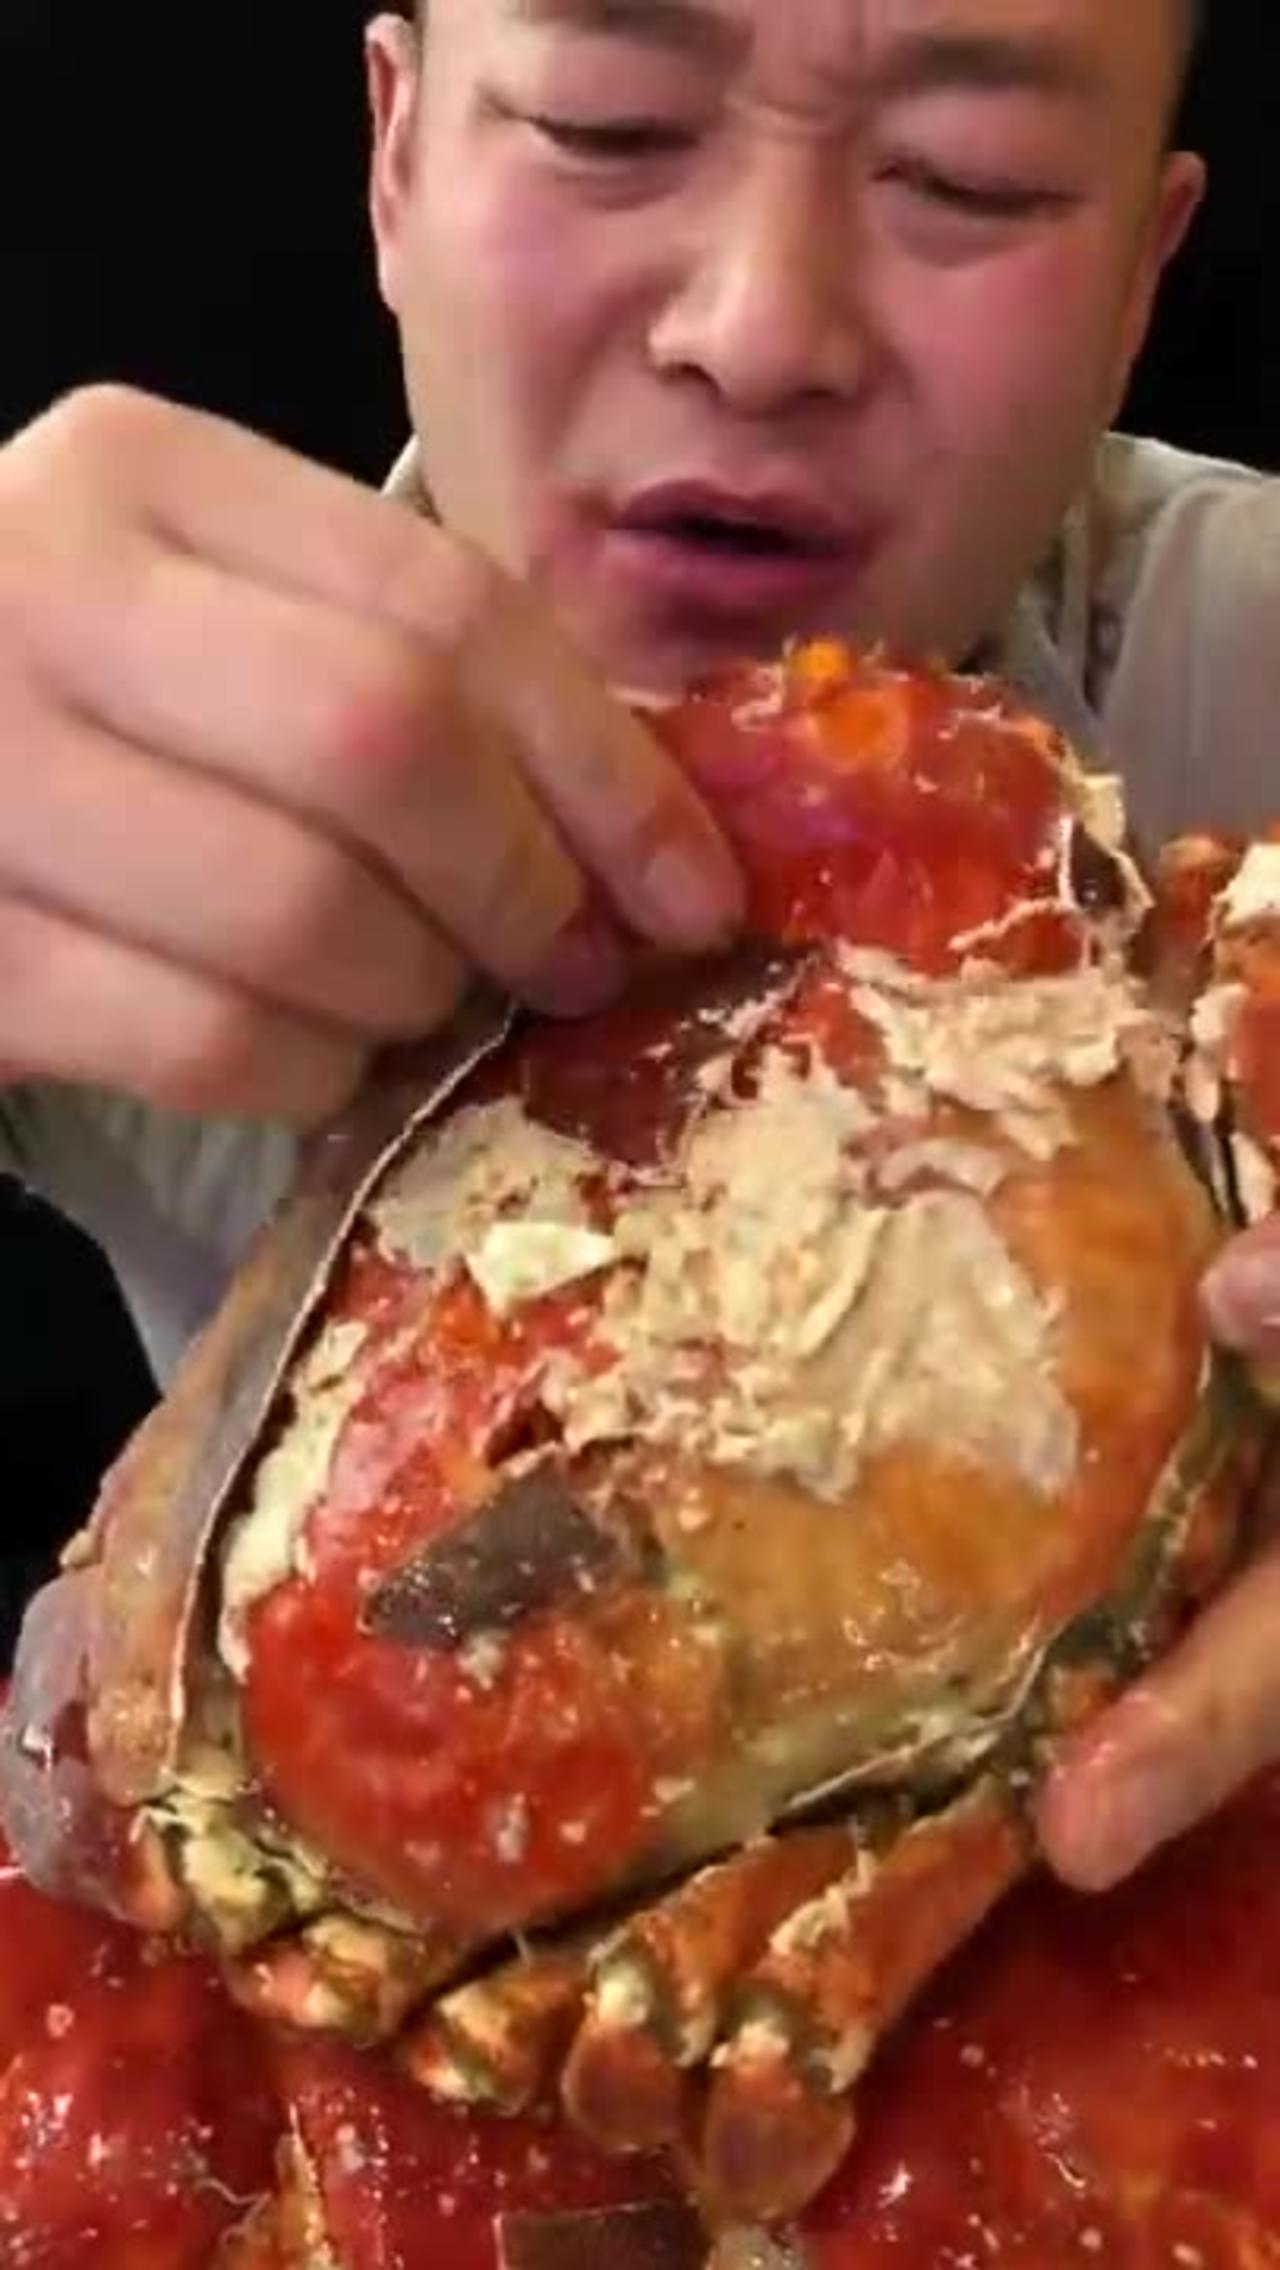 Mukbang Seafood - King Crab Satisfying Eating Seafoods